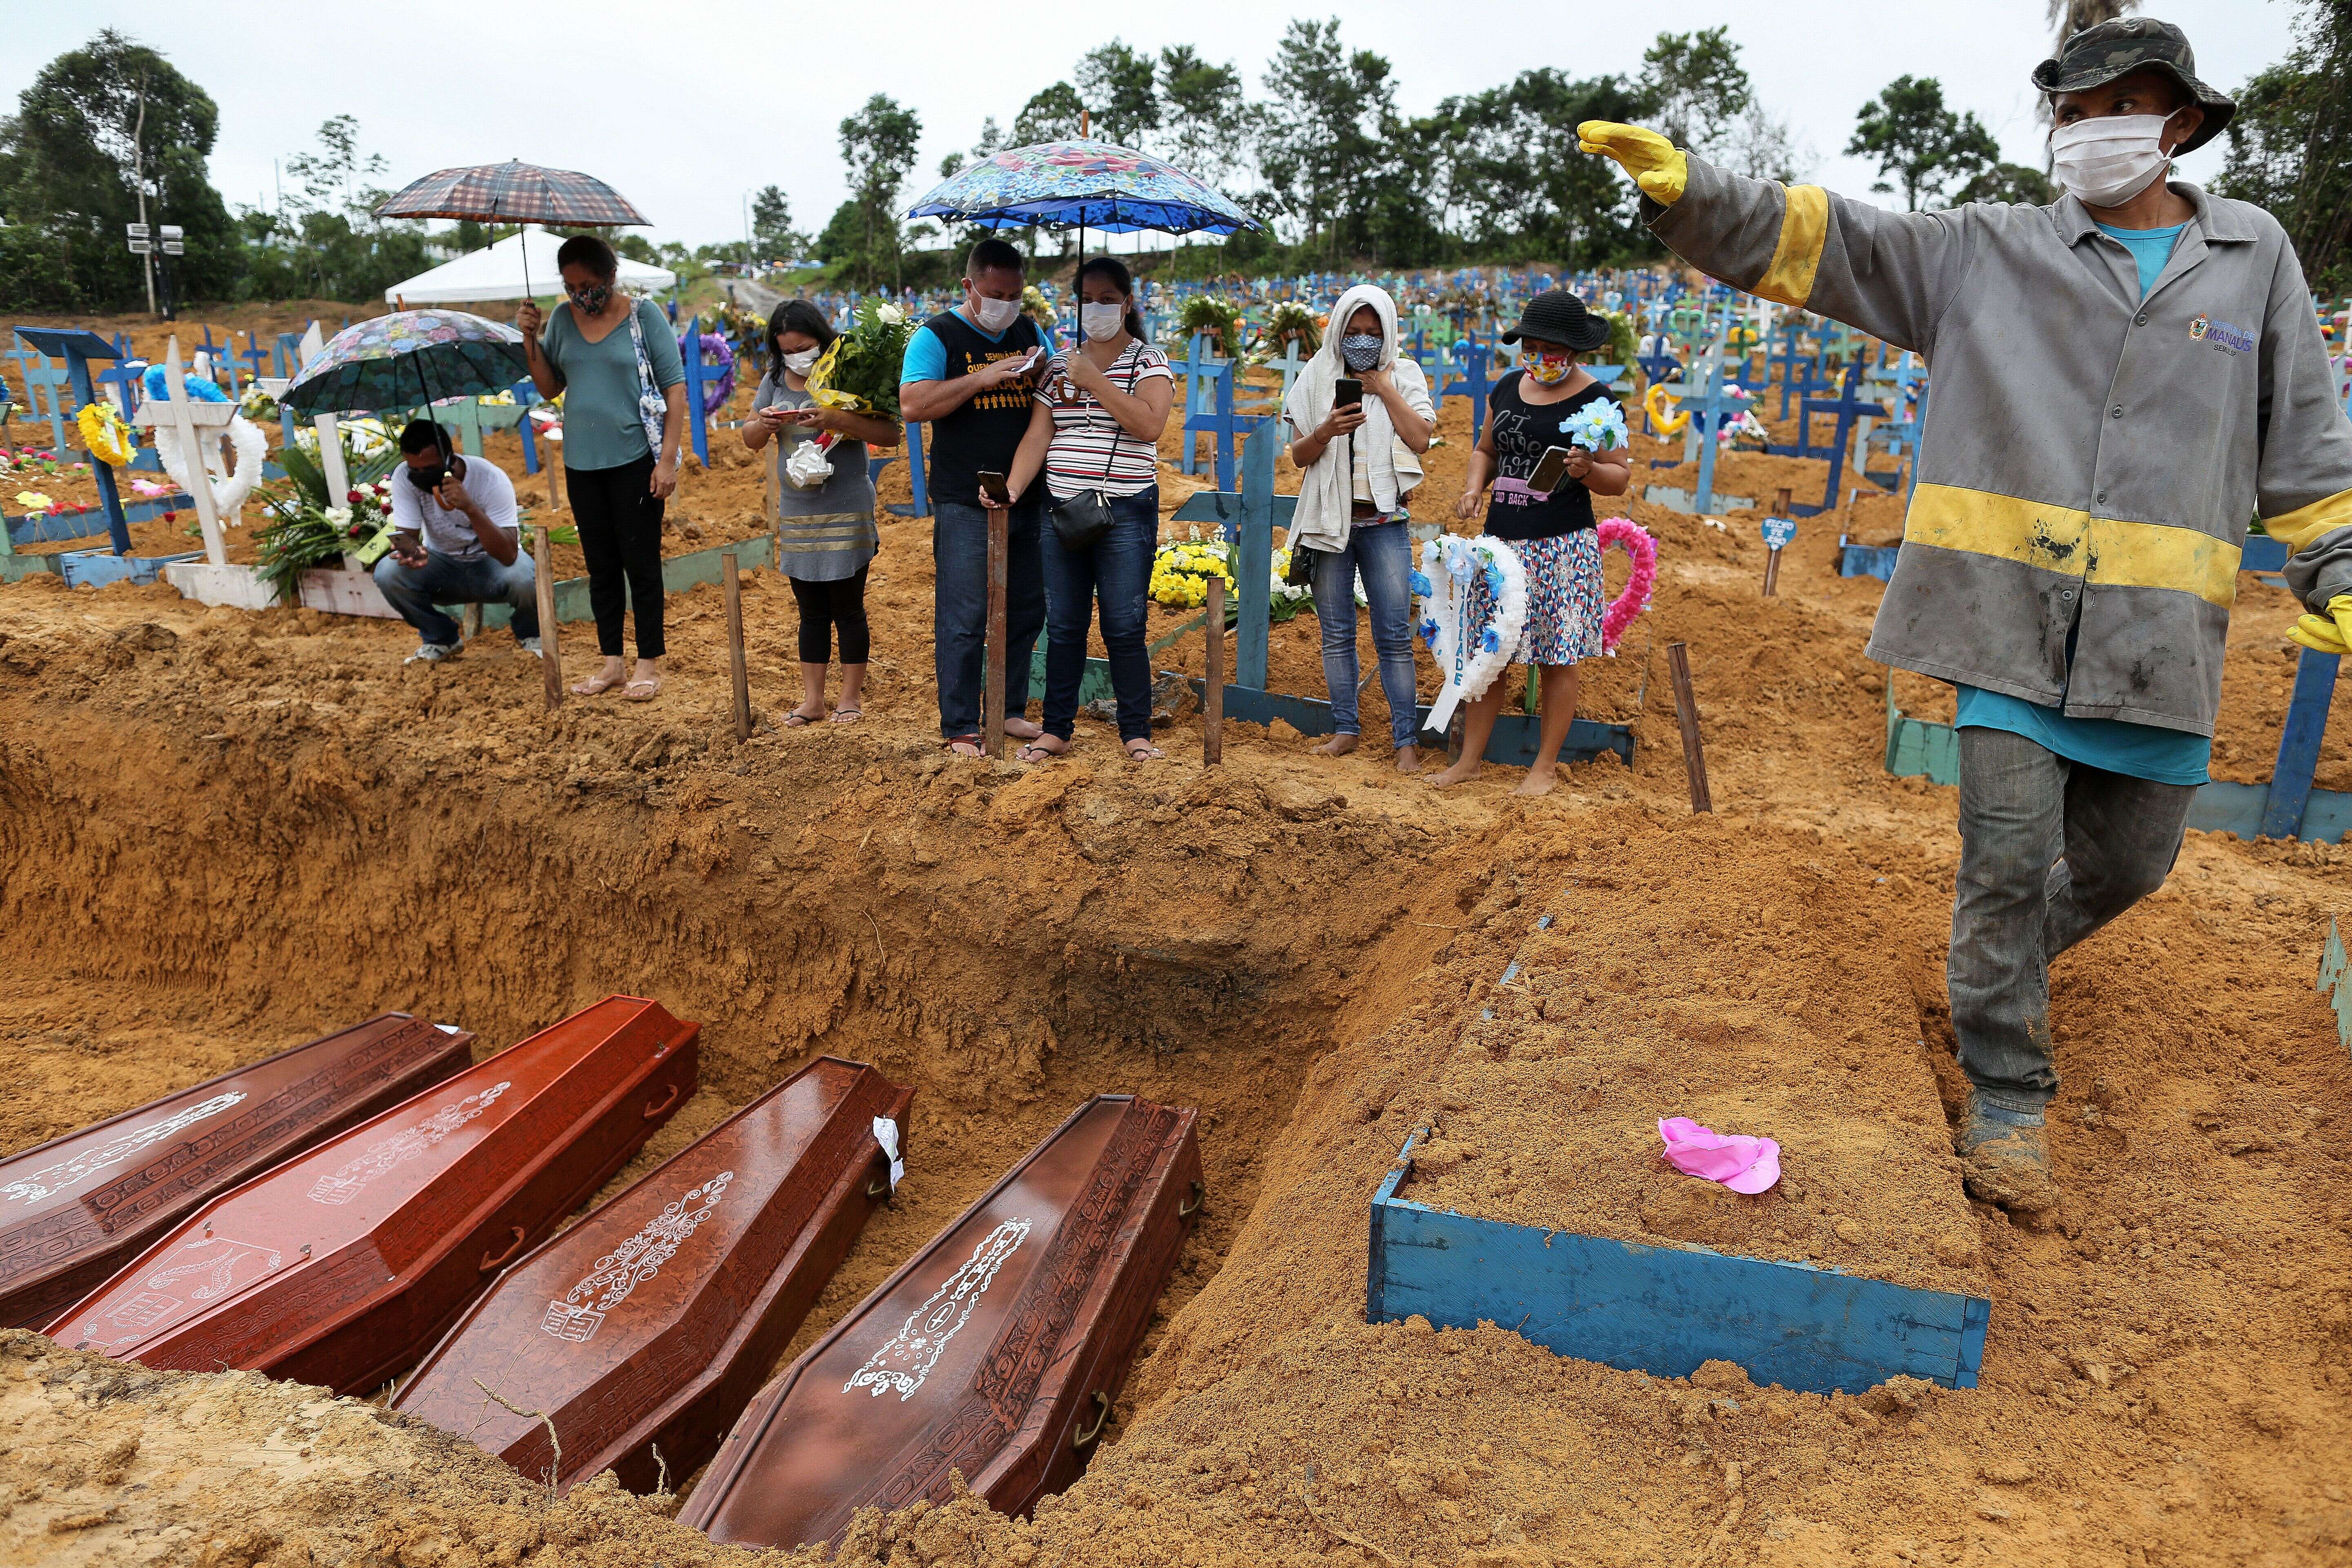 Photo prise le 6 mai 2020, au cimetière de Nossa Senhora à Manaus, lors de la première vague de la pandémie de Covid-19.